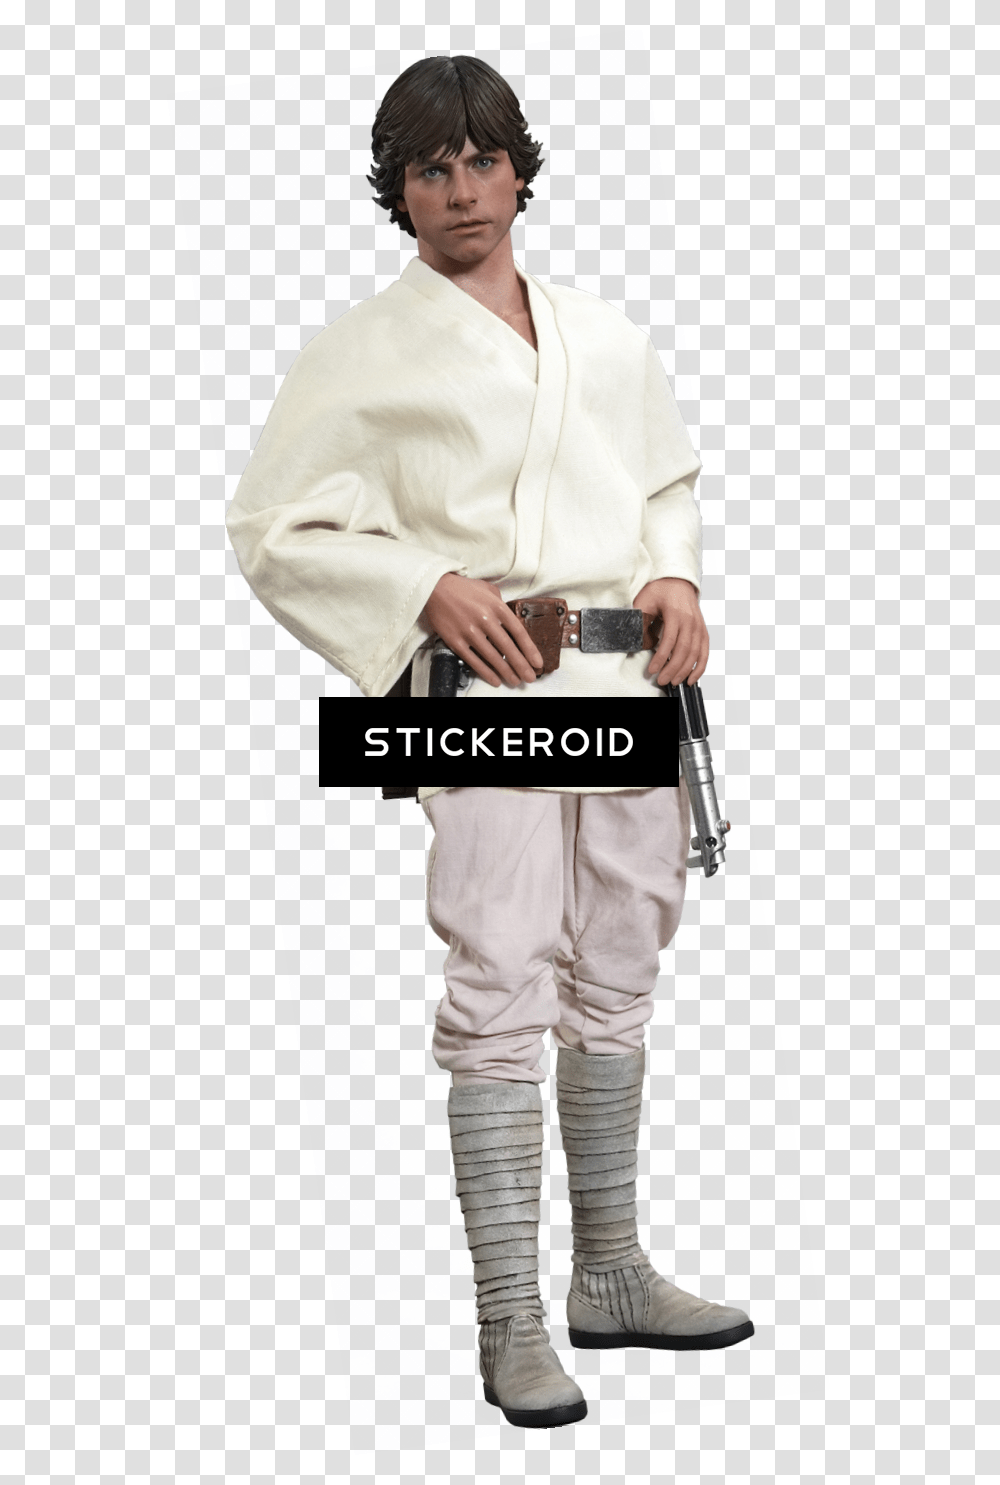 Luke Skywalker Star Wars Sixth Scale Figure Star Wars Luke Skywalker, Person, Sleeve, Accessories Transparent Png